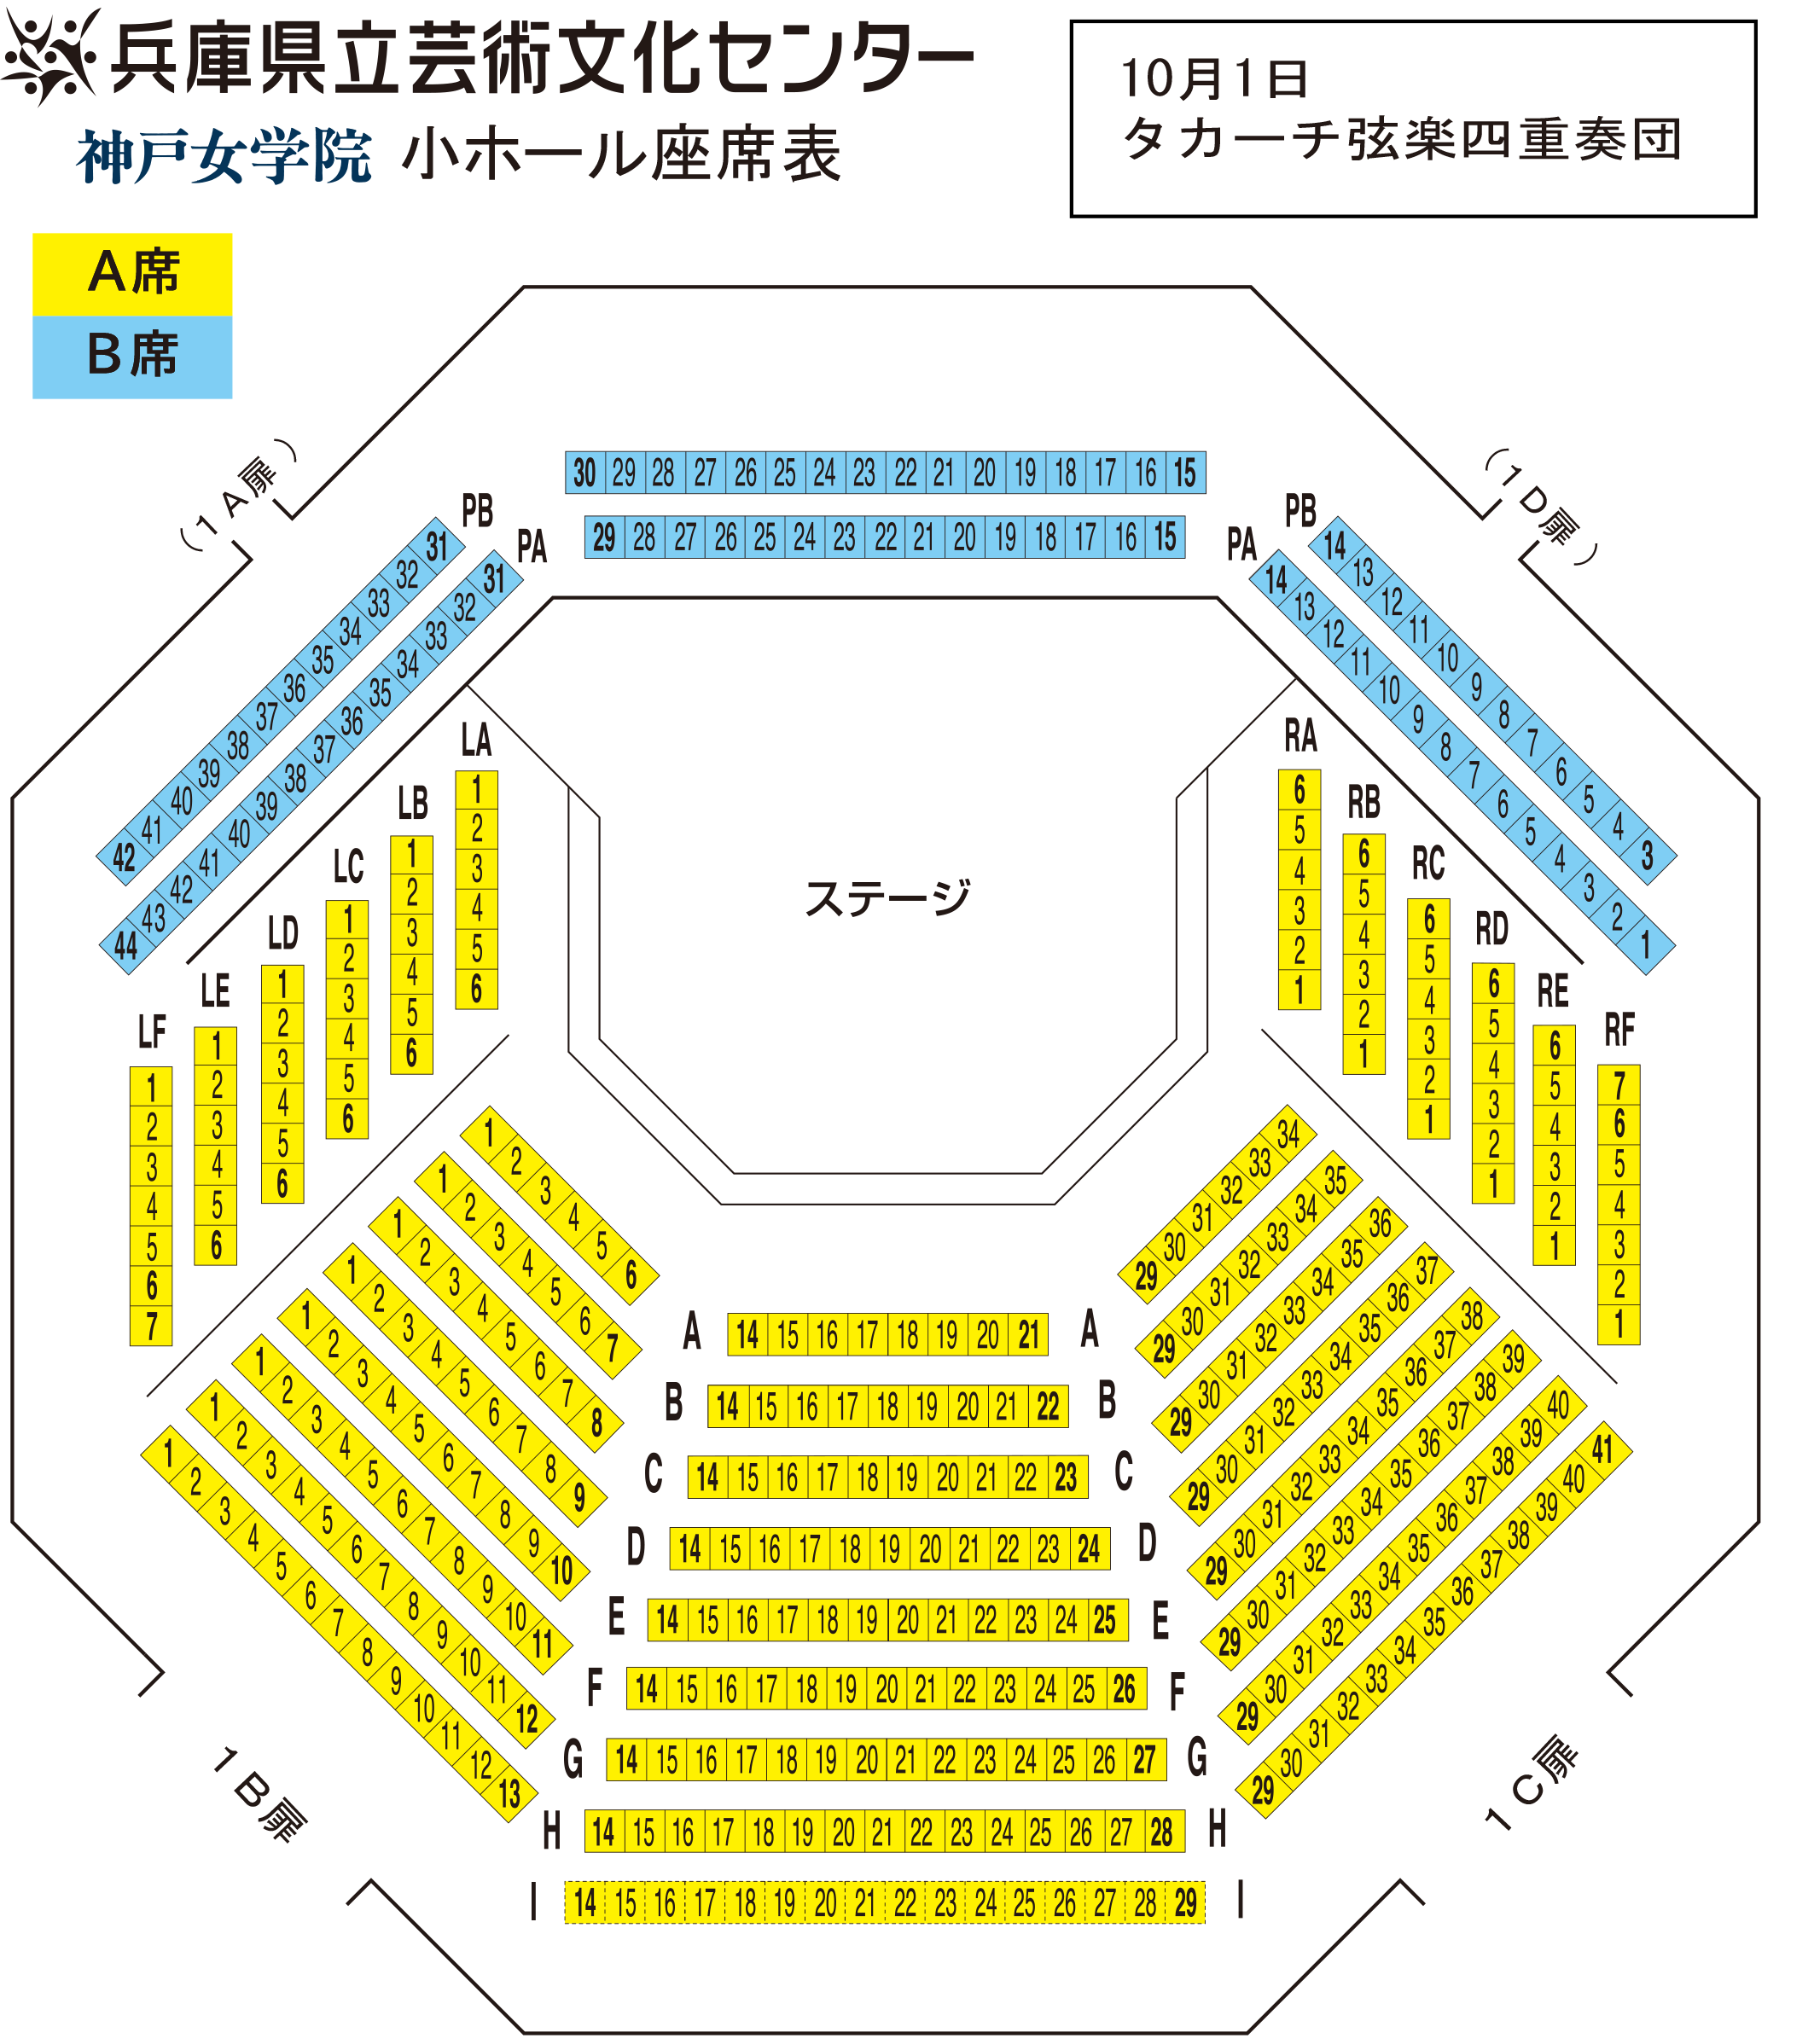 神戸女学院小ホール座席表